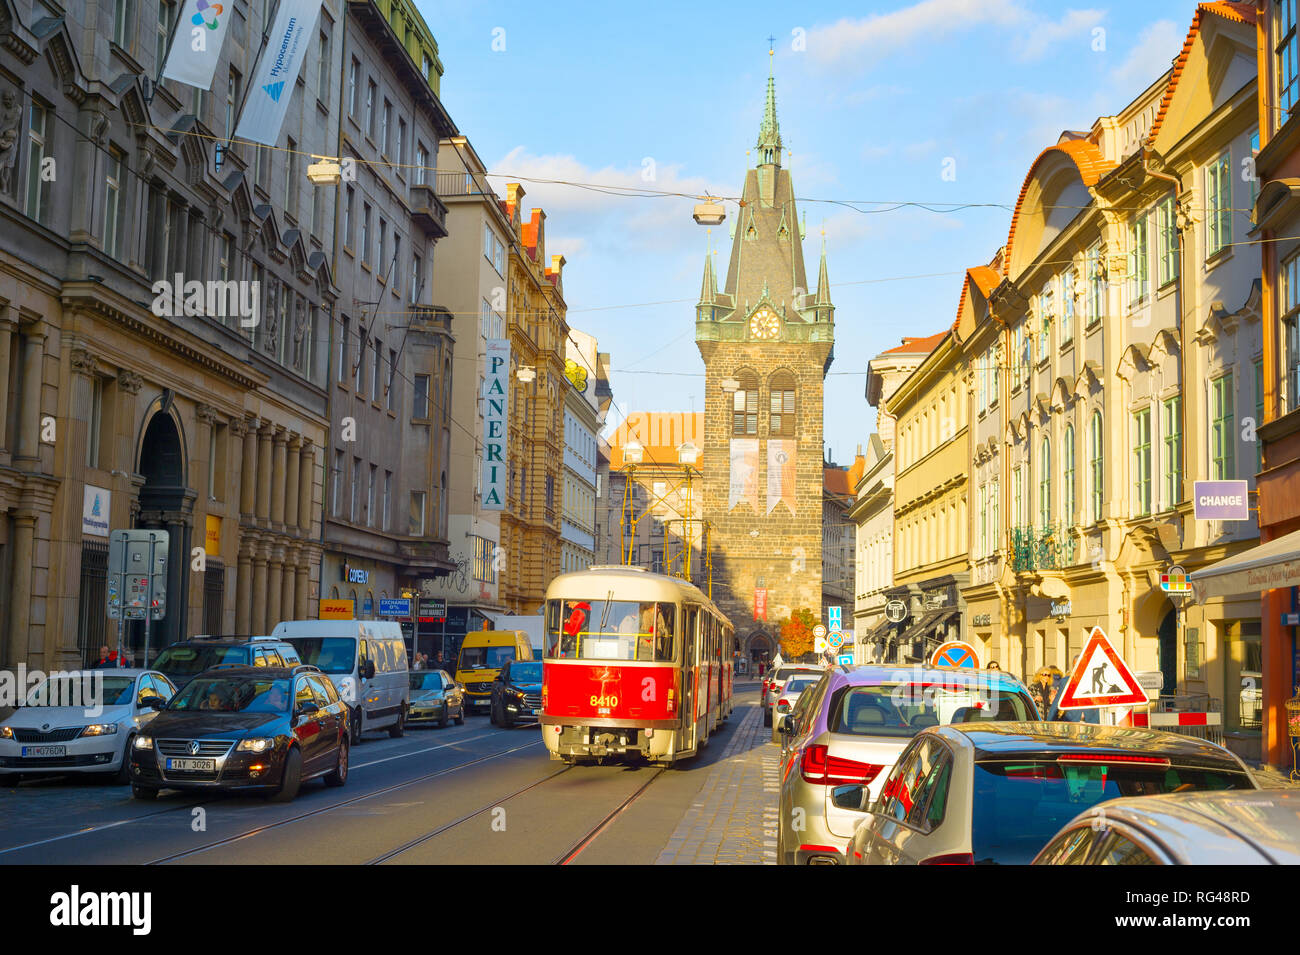 PRAGUE, RÉPUBLIQUE TCHÈQUE - le 14 novembre 2018 : Sunshine dans la vieille ville de Prague, rue tramway rouge et la circulation automobile, Henri Bell Tower en arrière-plan Banque D'Images